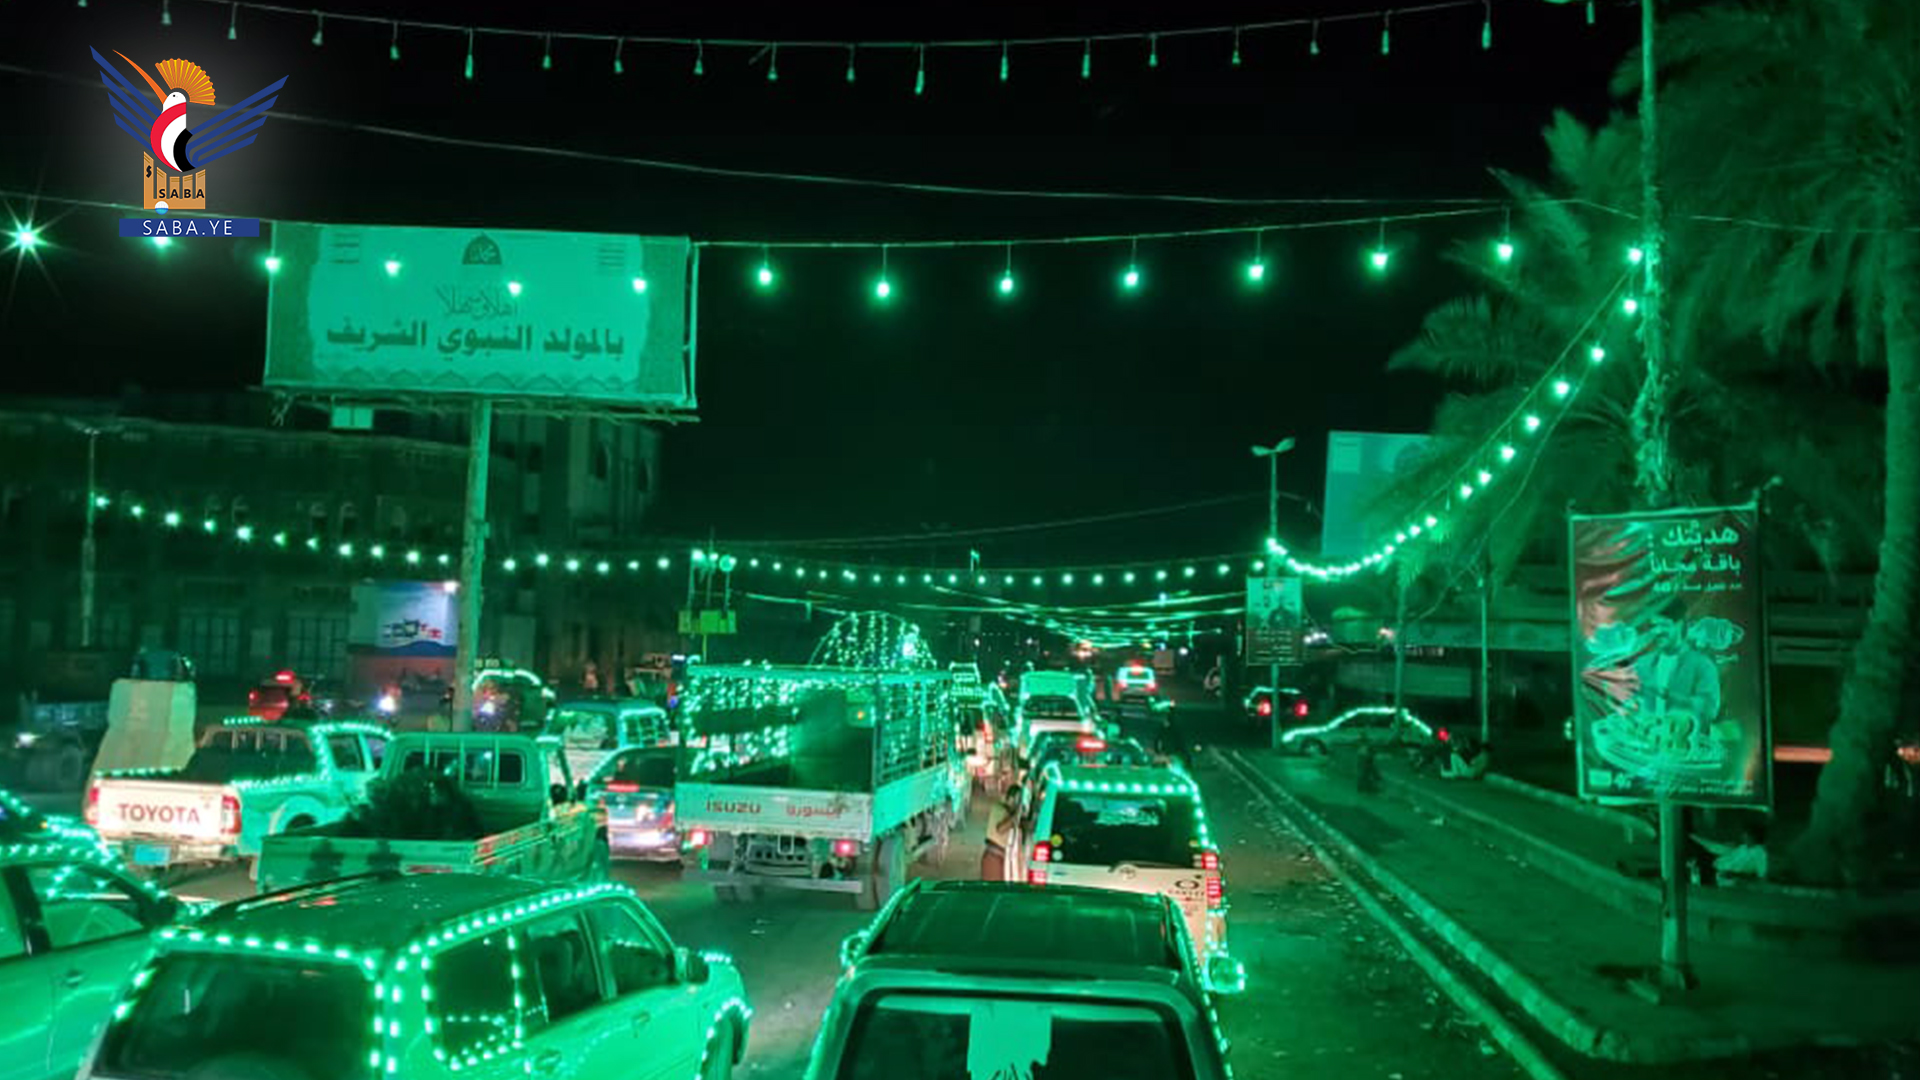 مئات السيارات والدراجات المضيئة بالأنوار المحمدية تجوب شوارع الحديدة